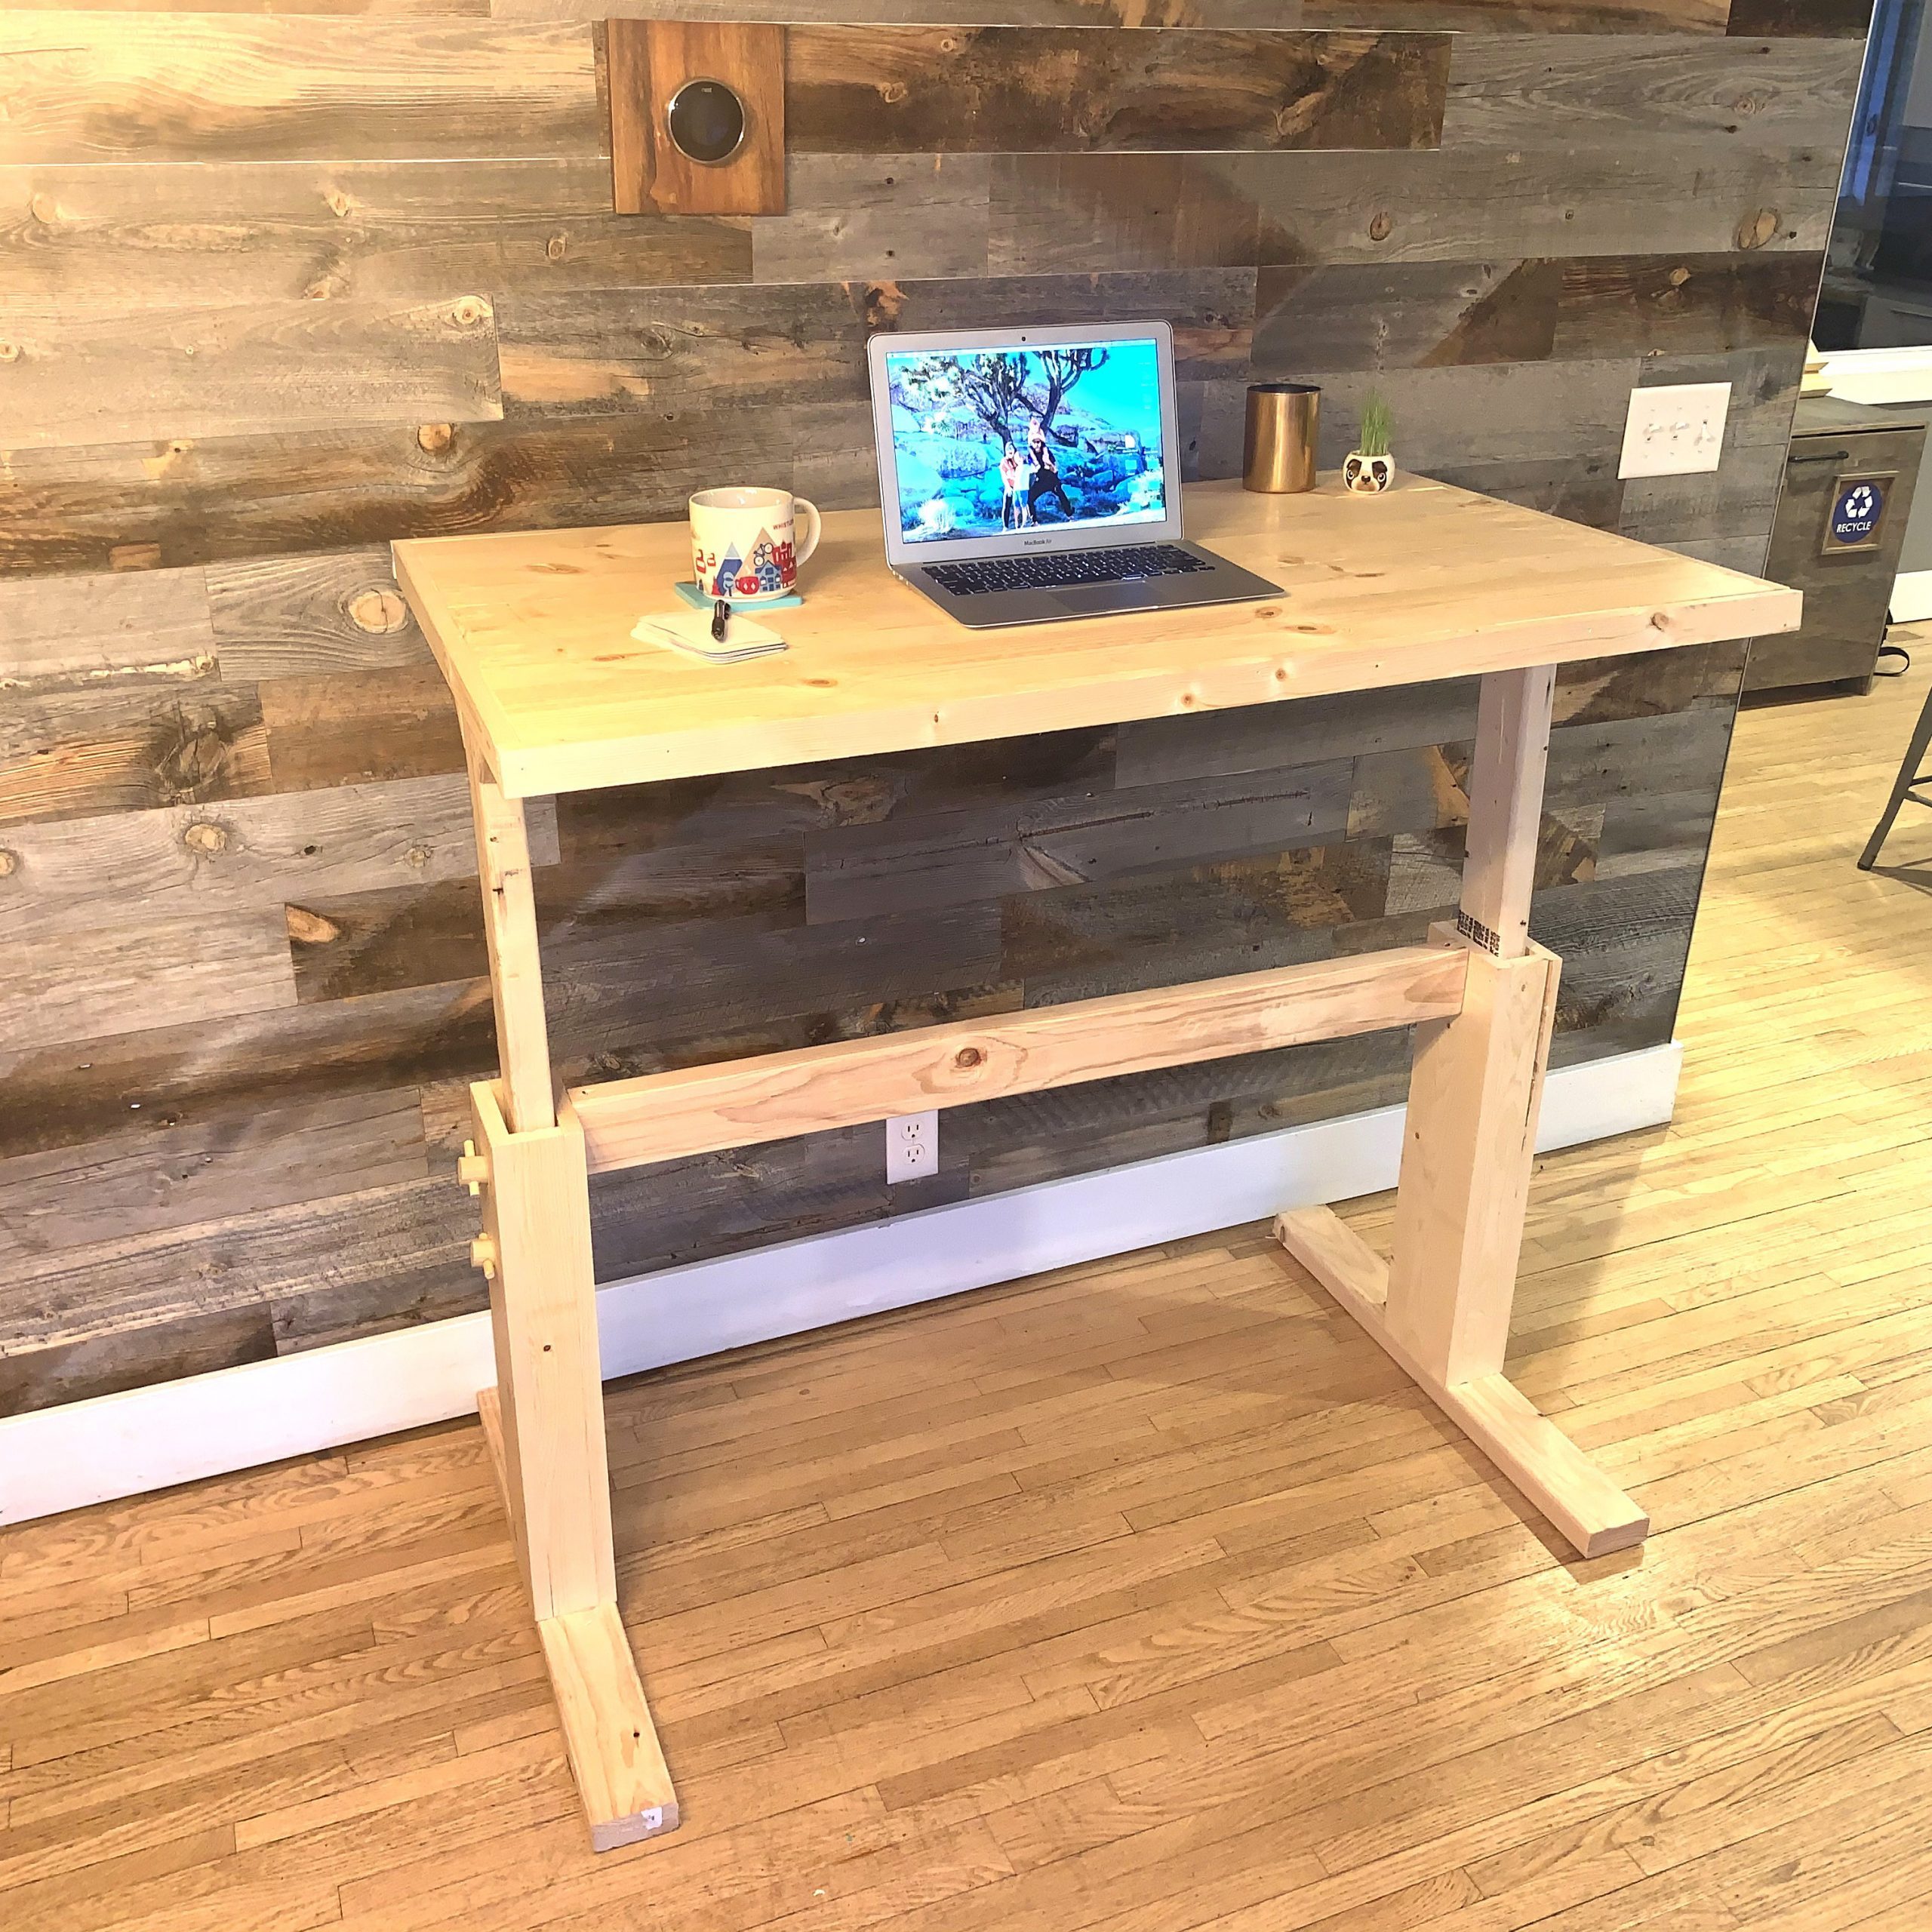 How to Make Your Own Adjustable DIY Desk (DIY)